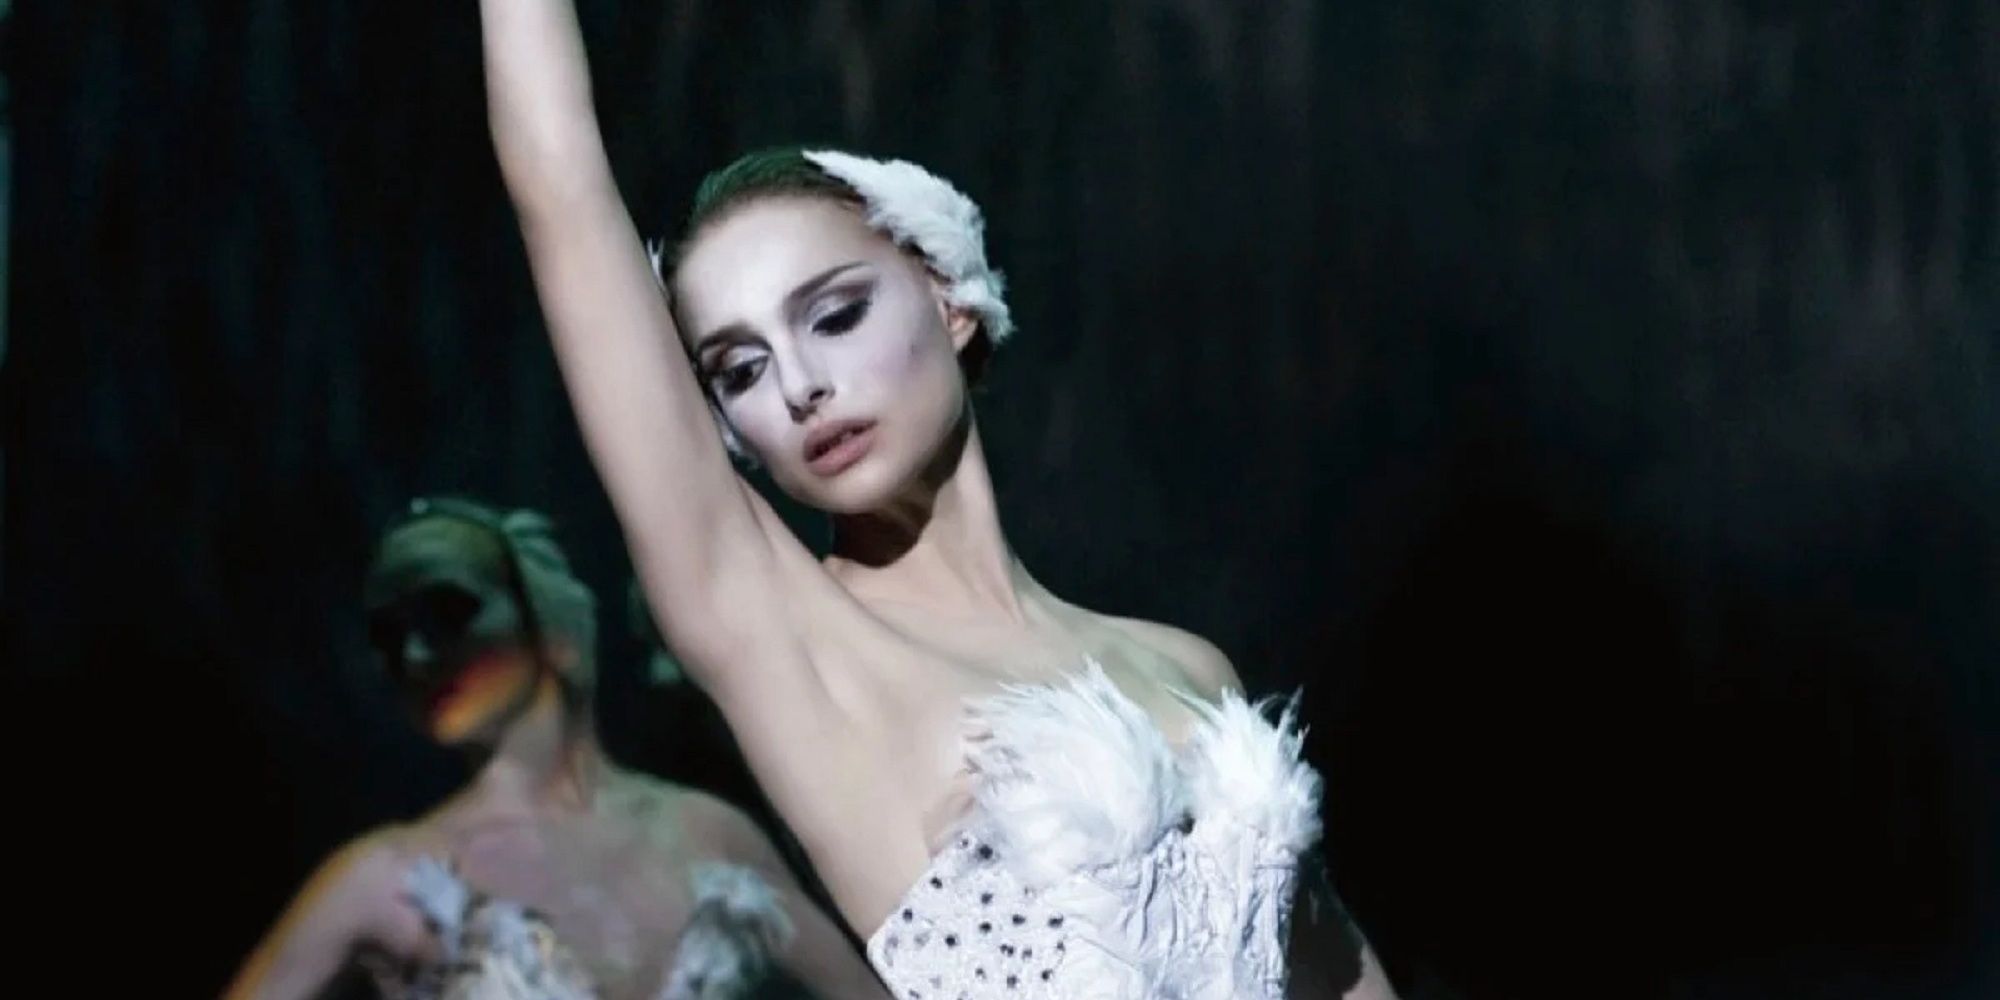 Nina performing Swan Lake on stage in 'Black Swan'